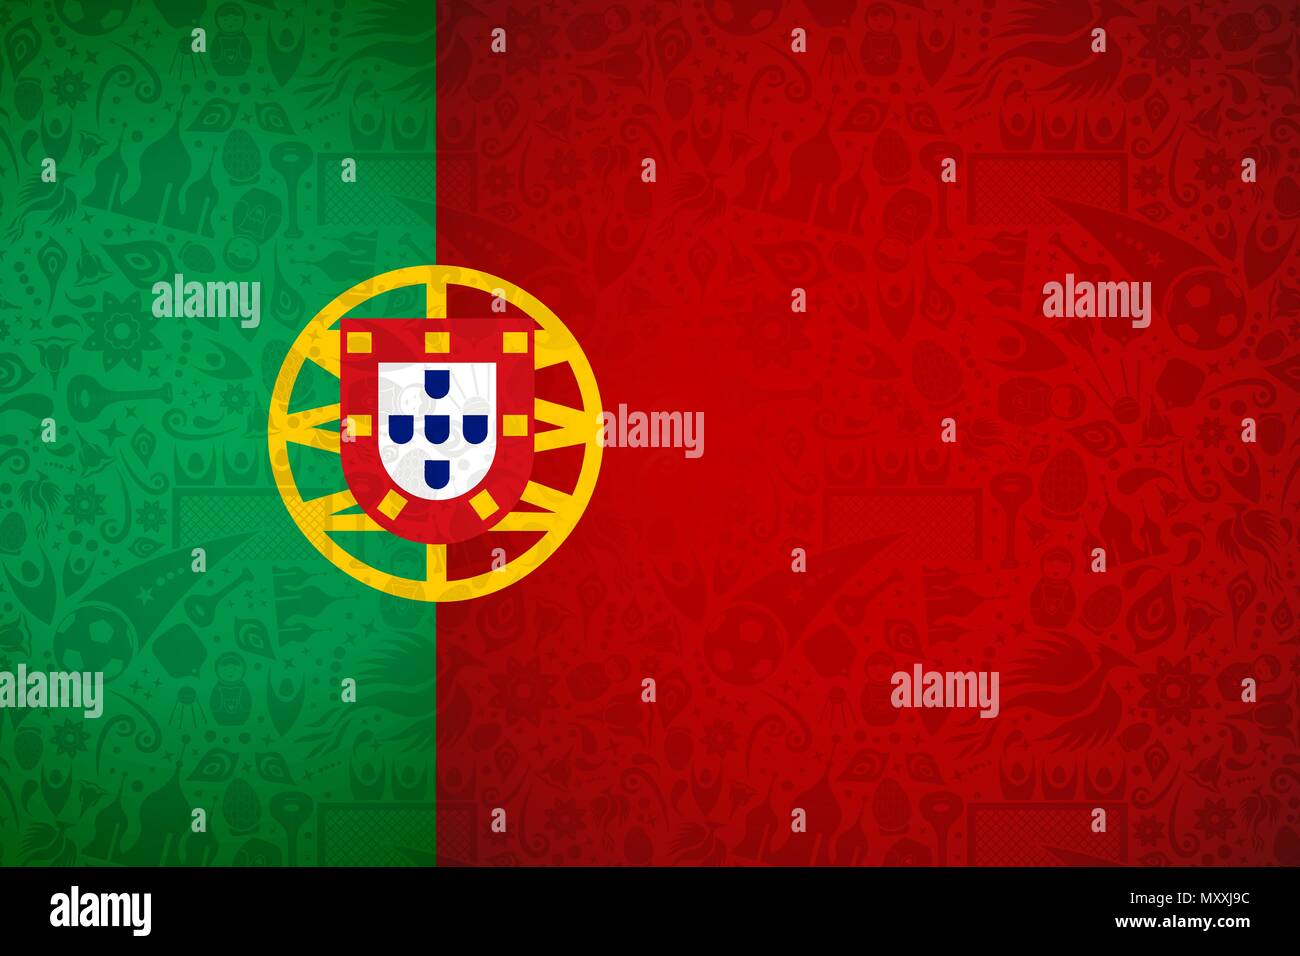 Portugal Flagge Hintergrund für besondere Fußball-Sport Ereignis. Mit russischen Stil Ikonen. EPS 10 Vektor. Stock Vektor